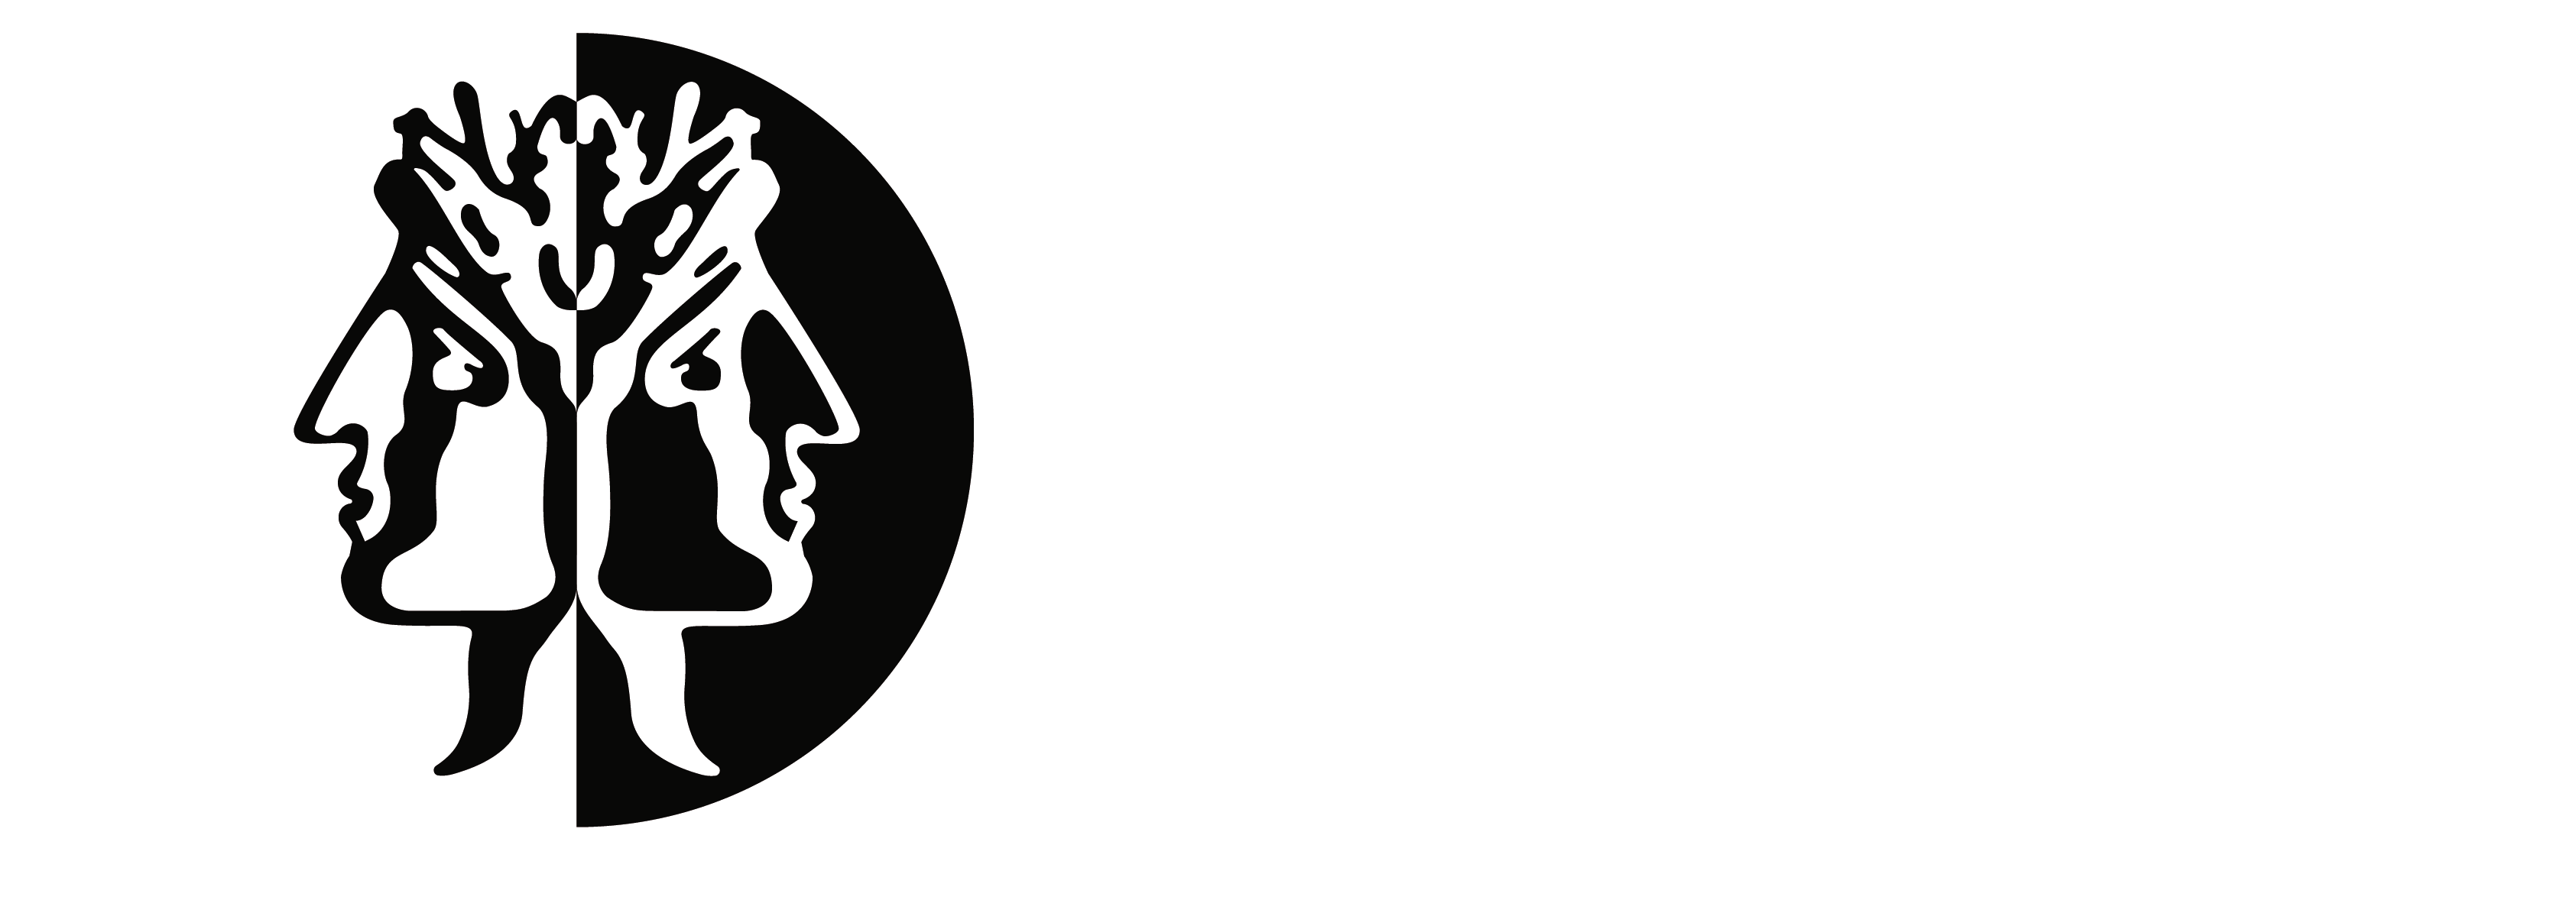 Logotipo secundario de Janus Management, asesoramiento y gestión para empresas y empresarios.